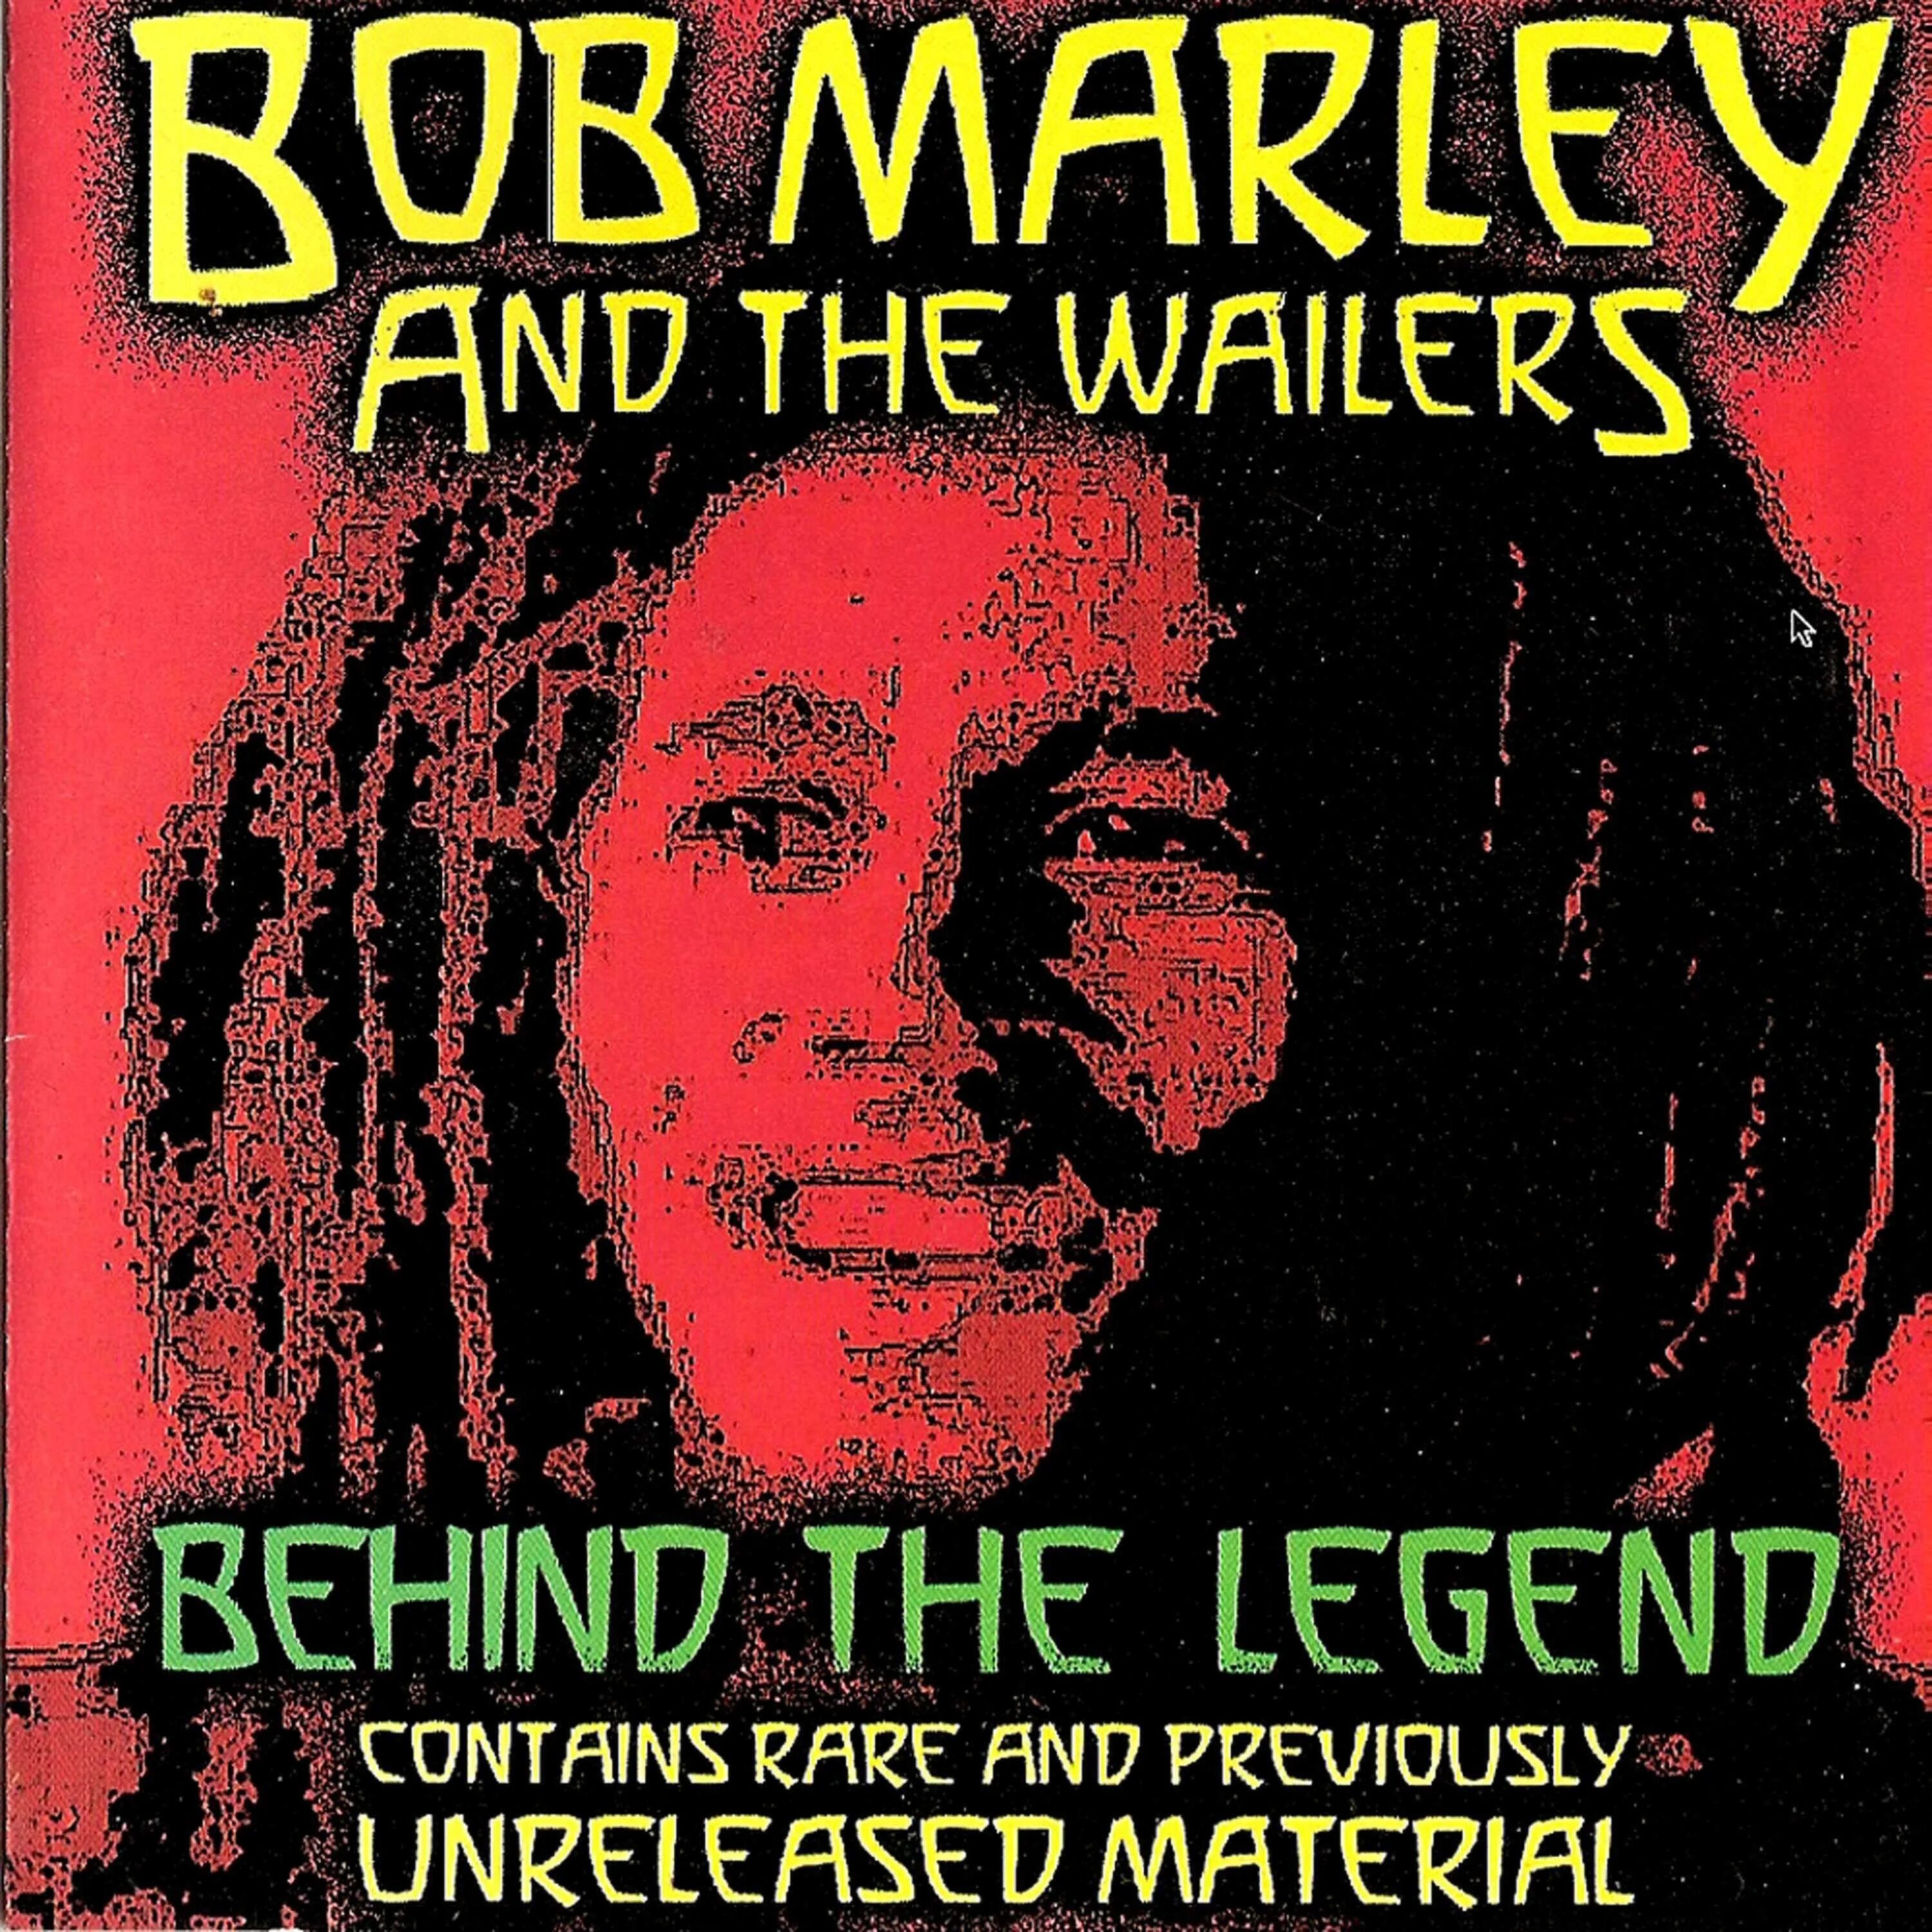 Bob Marley CD 192. Bob Marley (1984 - Legend). Legend группы Bob Marley and the Wailers. Обложки альбомов Боба Марли. Bob marley one love 2024